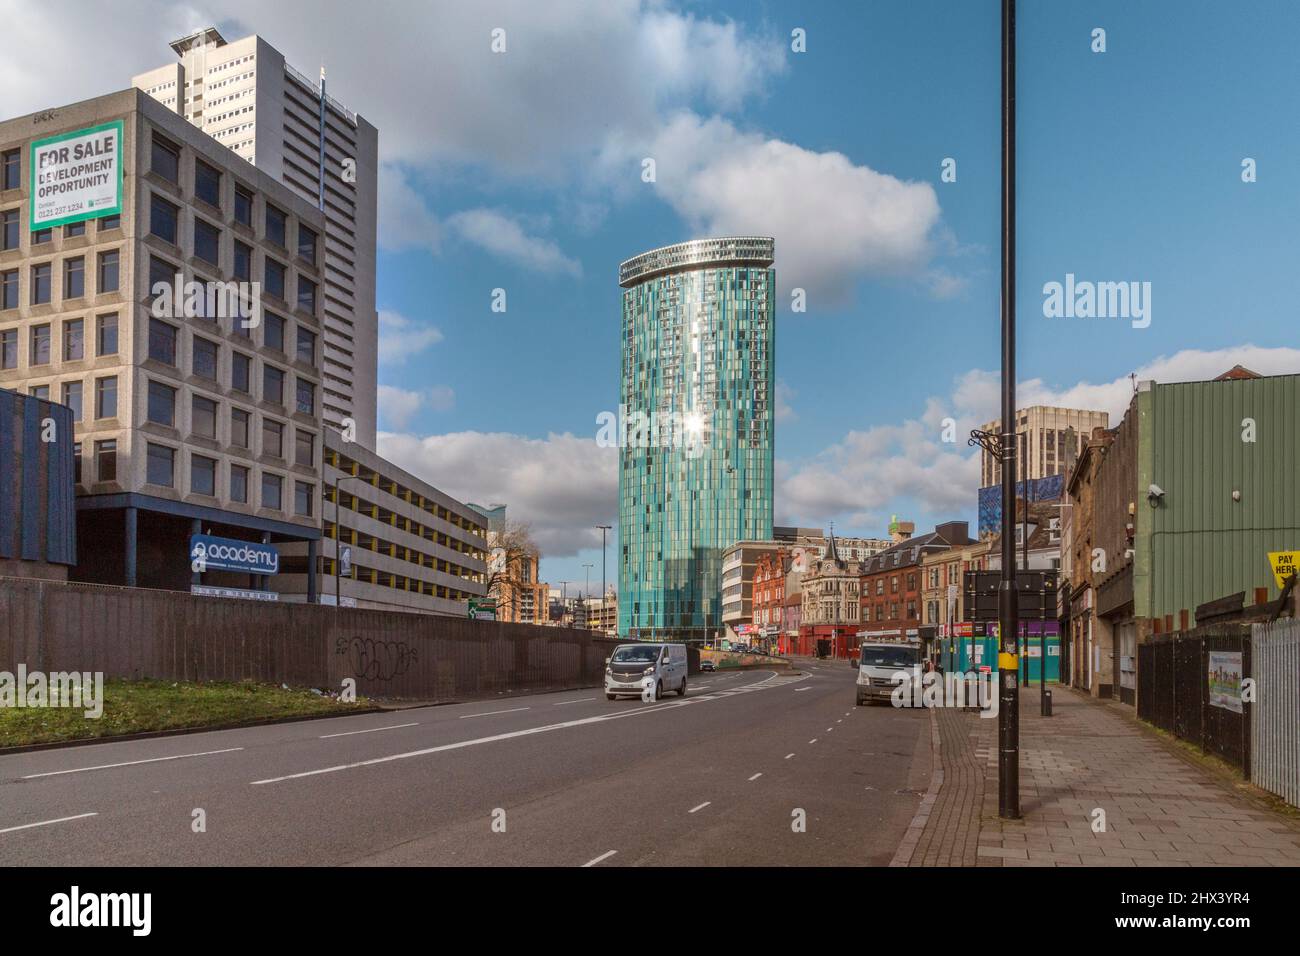 10 Holloway Circus steht hoch im Stadtzentrum von Birmingham. In den oberen Etagen befinden sich Apartments, während die unteren 19 einem Hotel übergeben werden. Stockfoto